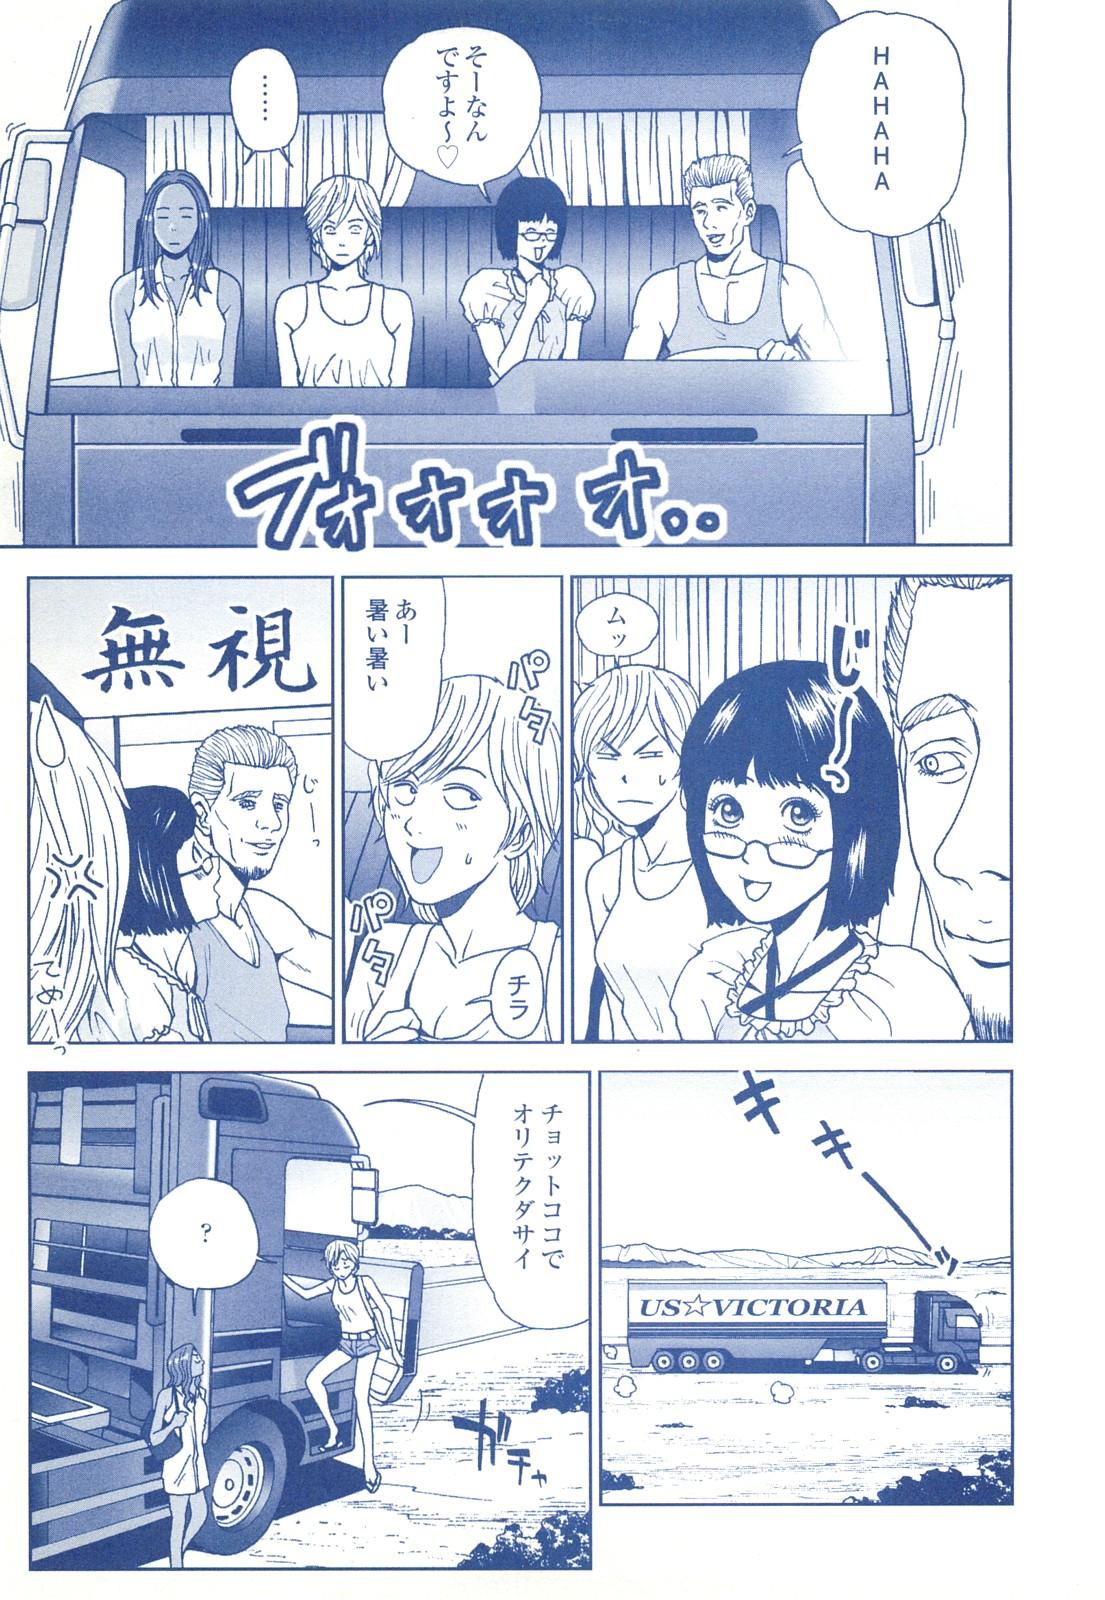 コミック裏モノJAPAN Vol.18 今井のりたつスペシャル号 216